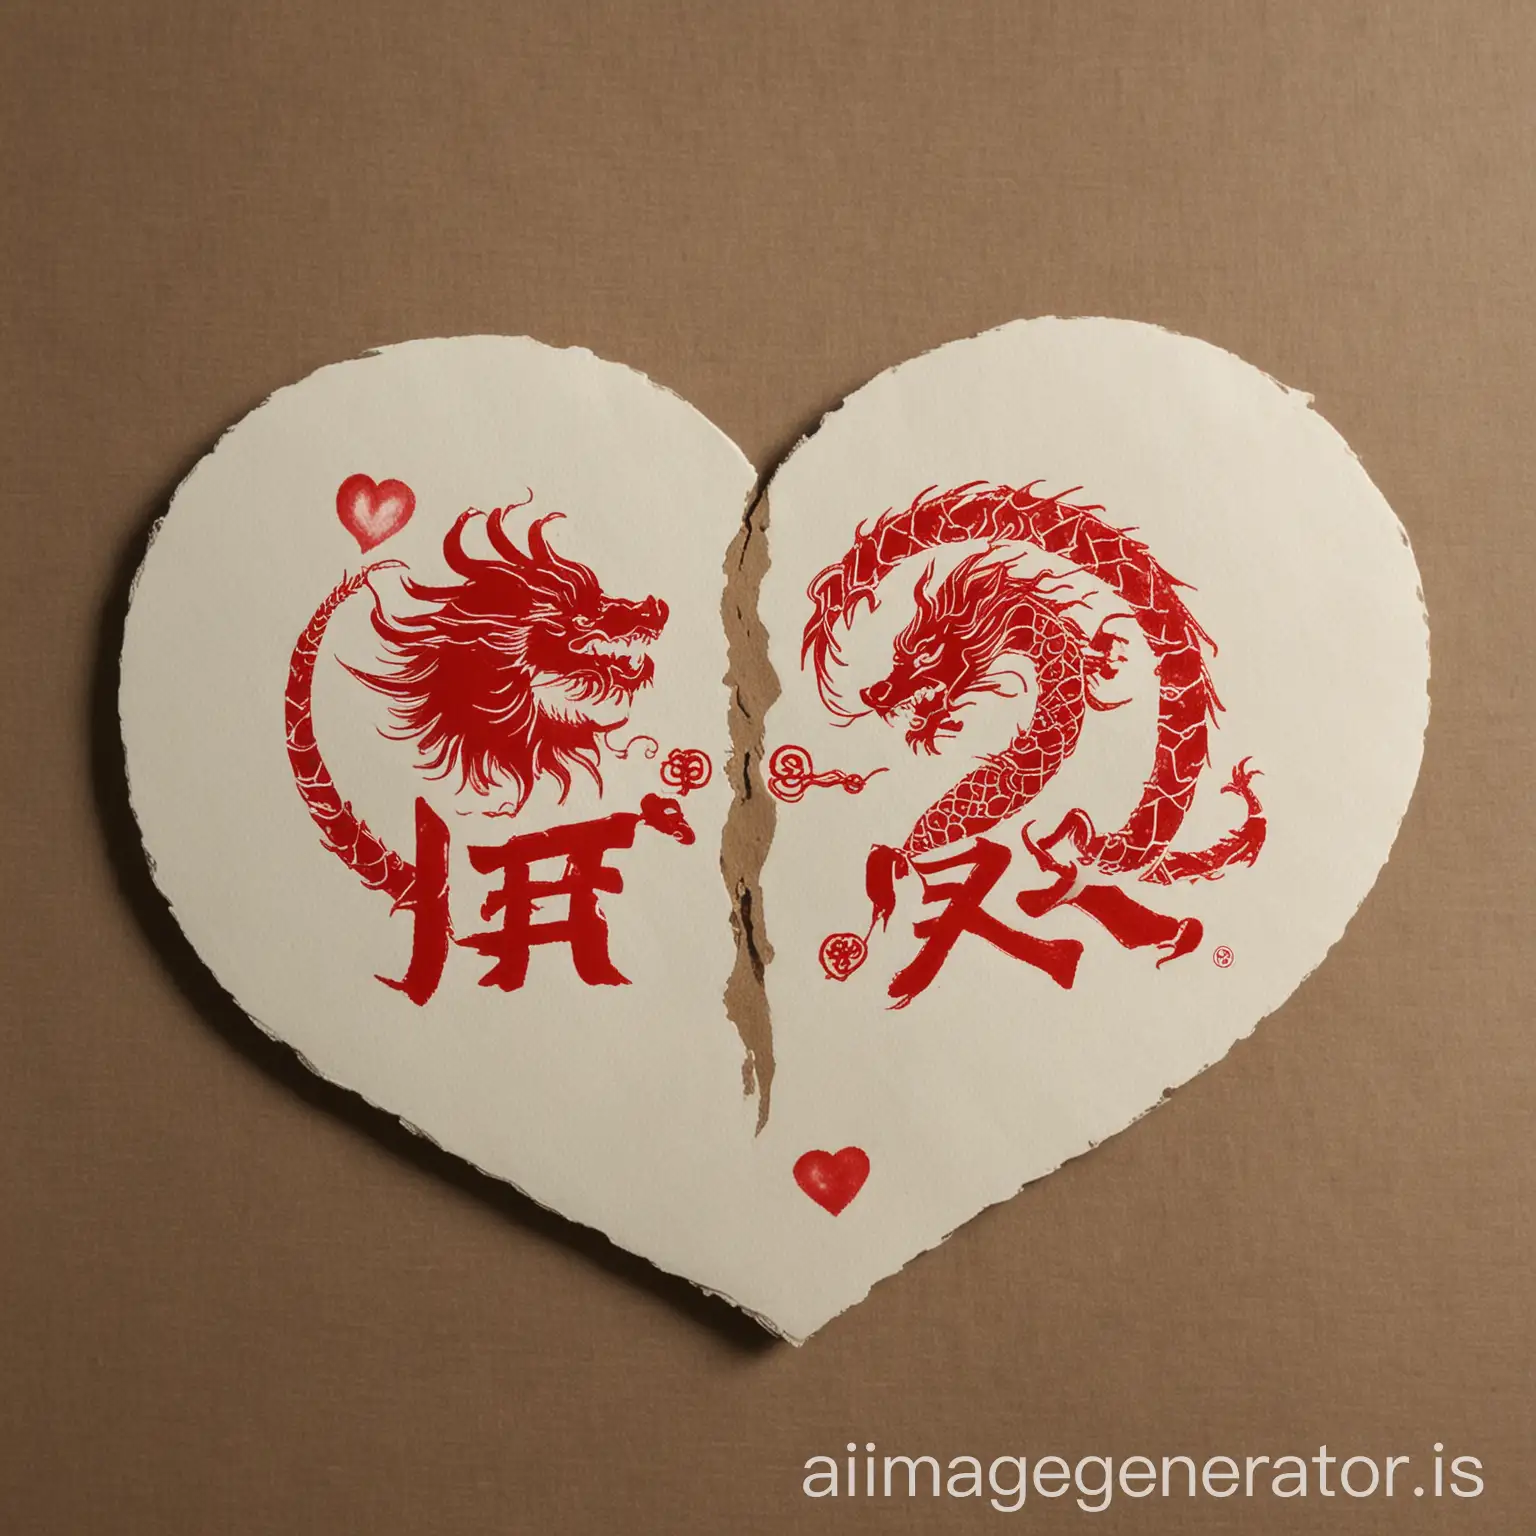 爱心图，左边写着青梅，右边写着少龙，左边有个爱心，右边有一条龙